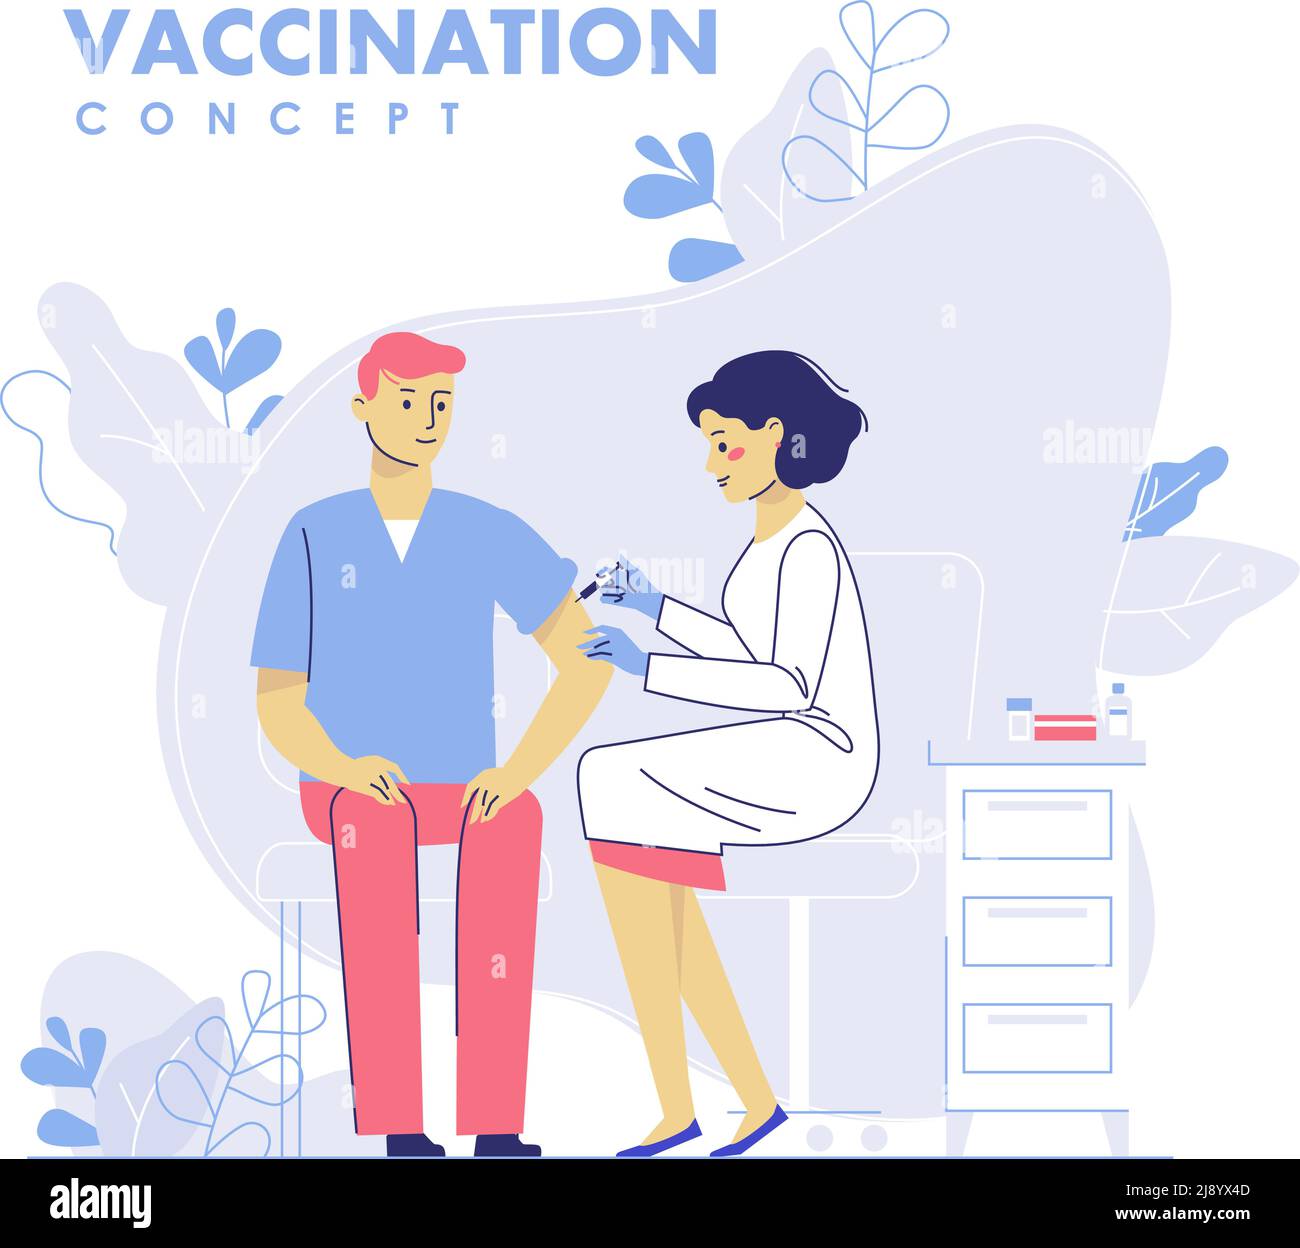 Der Arzt gibt einem Mann im Krankenhaus eine Grippeimpfung. Gesundheitswesen, medizinische Behandlung, Prävention und Immunisierung. Stock Vektor